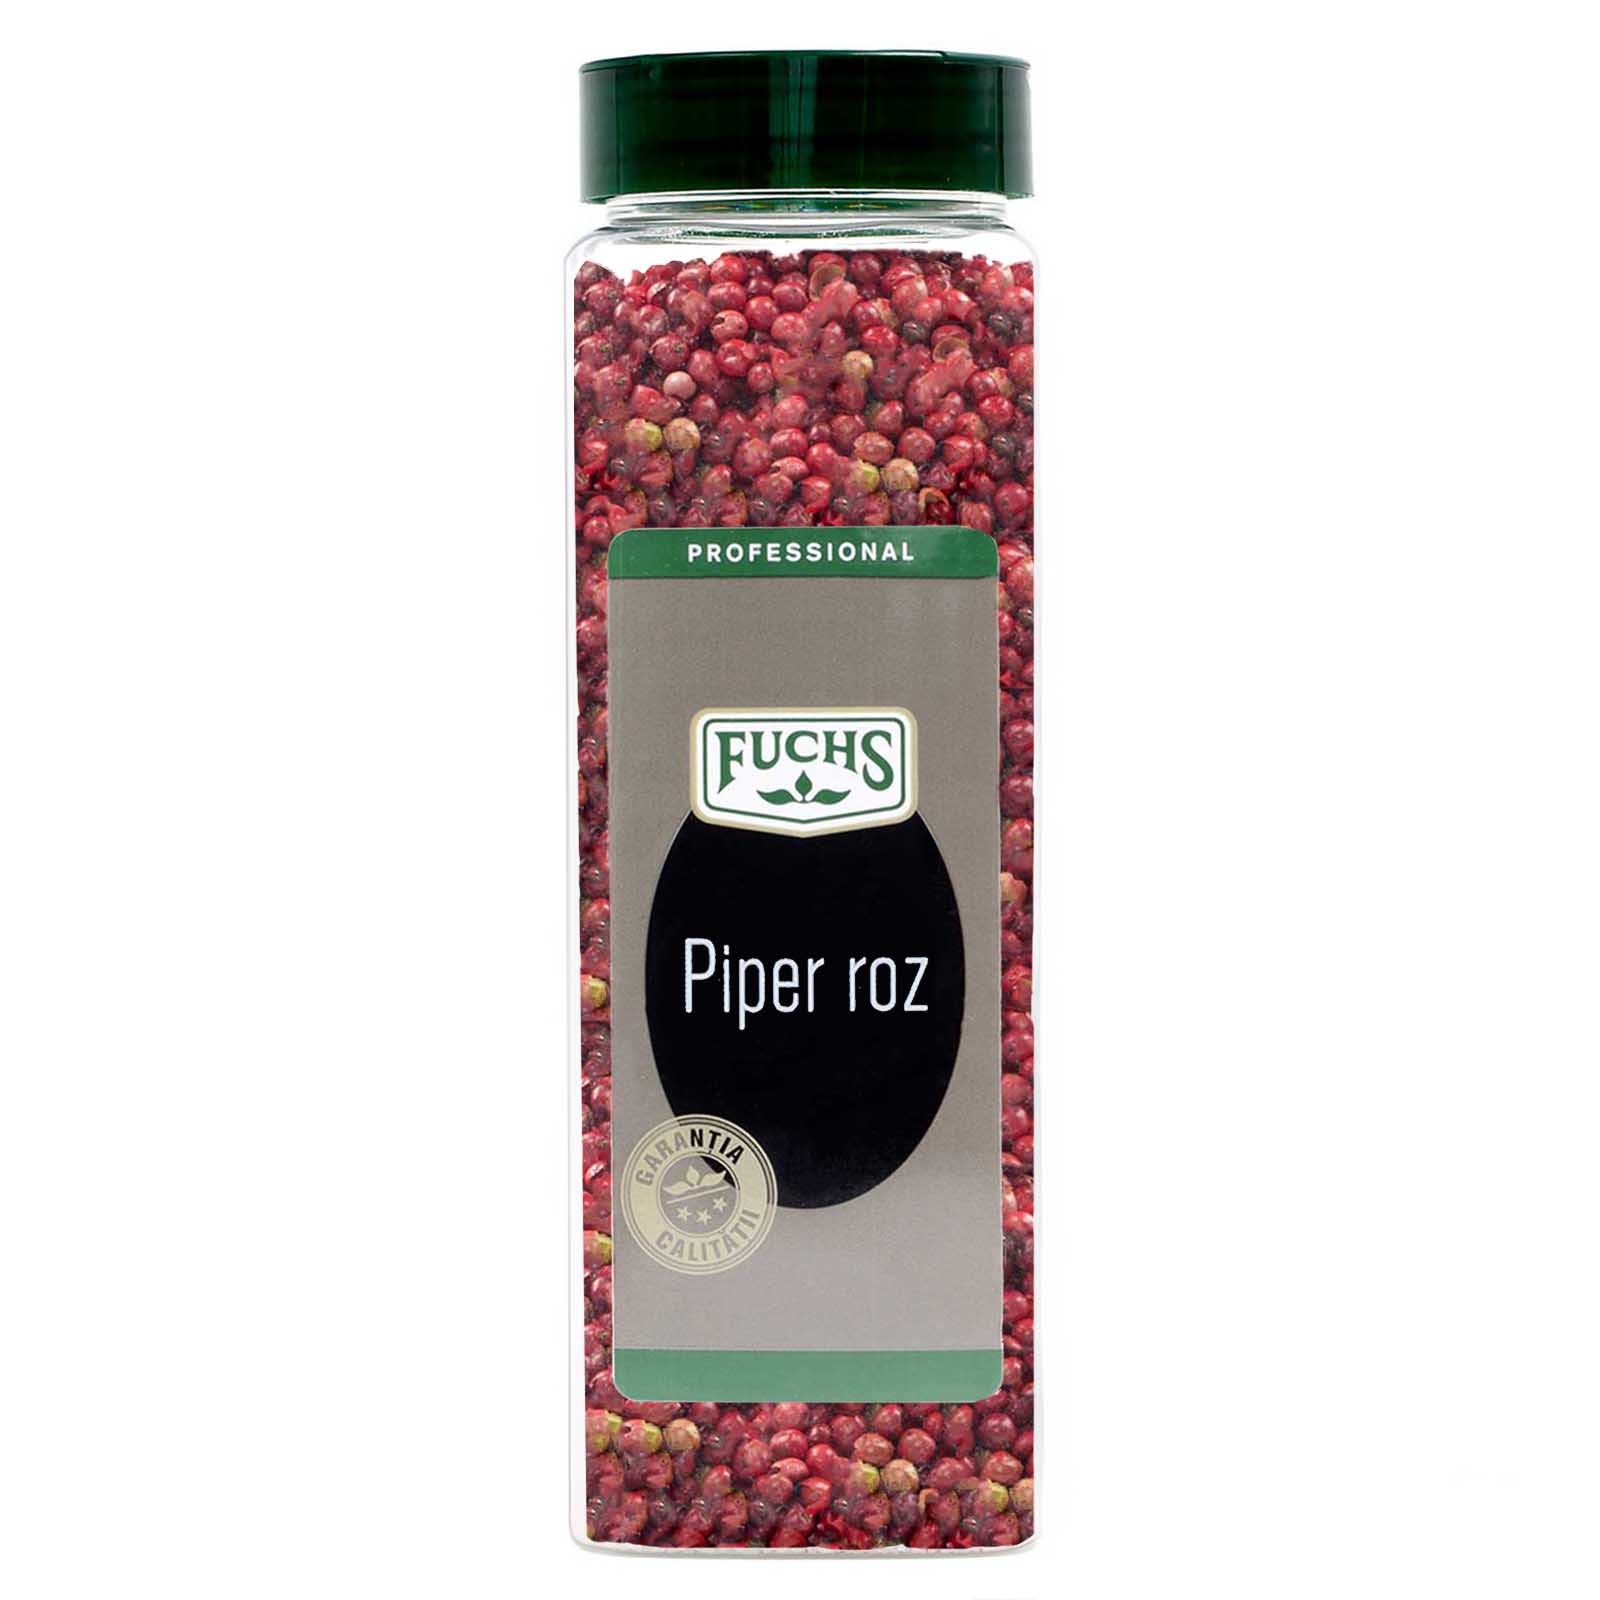 Piper roz, Fuchs, 250g